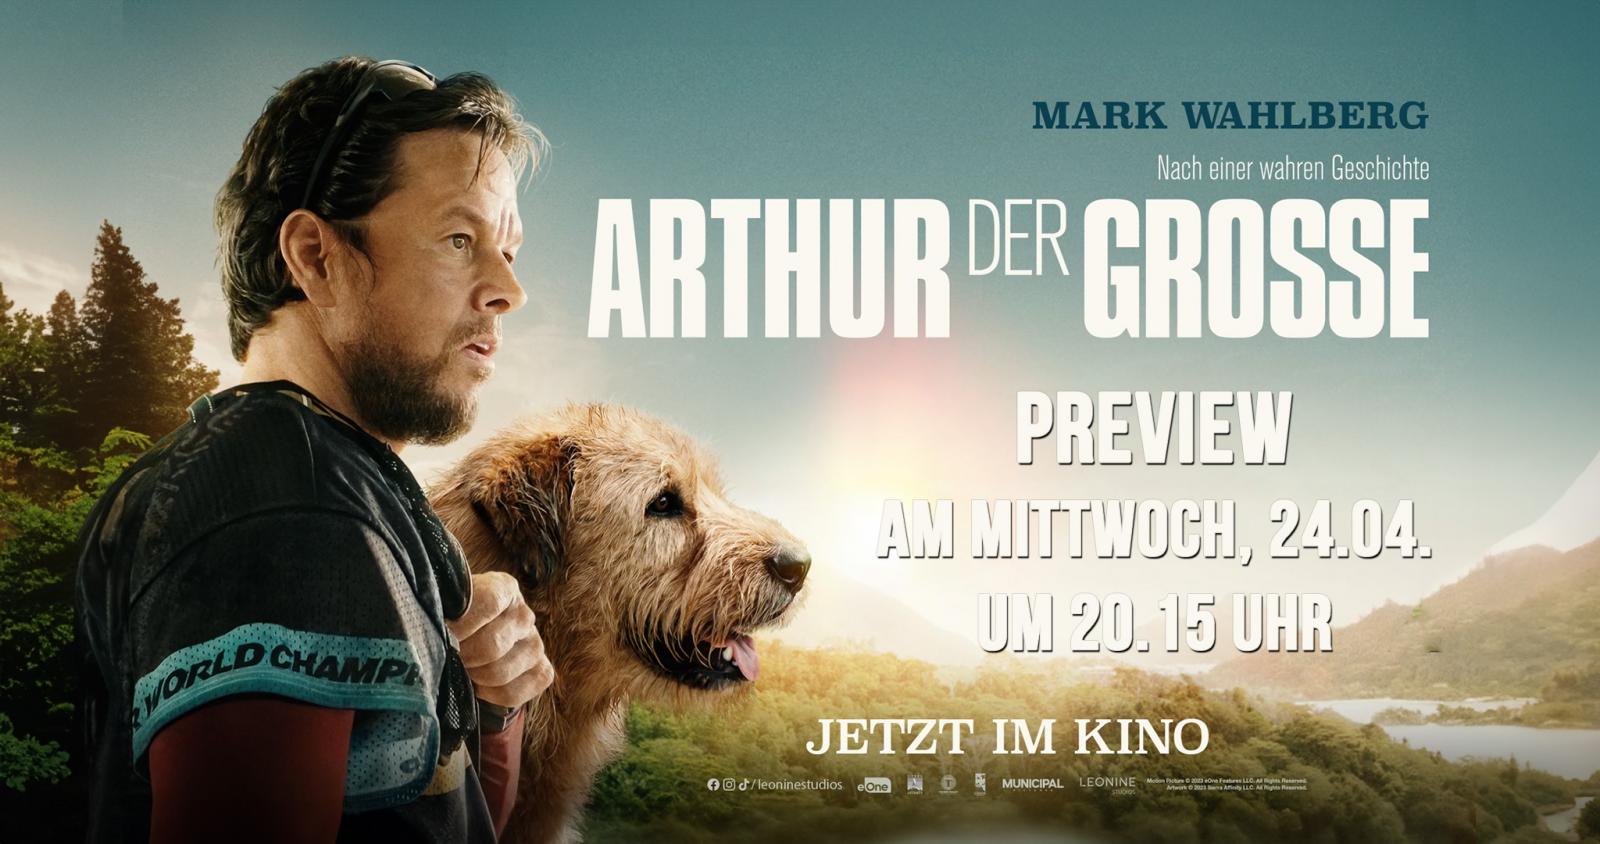 Preview Arthur der Große